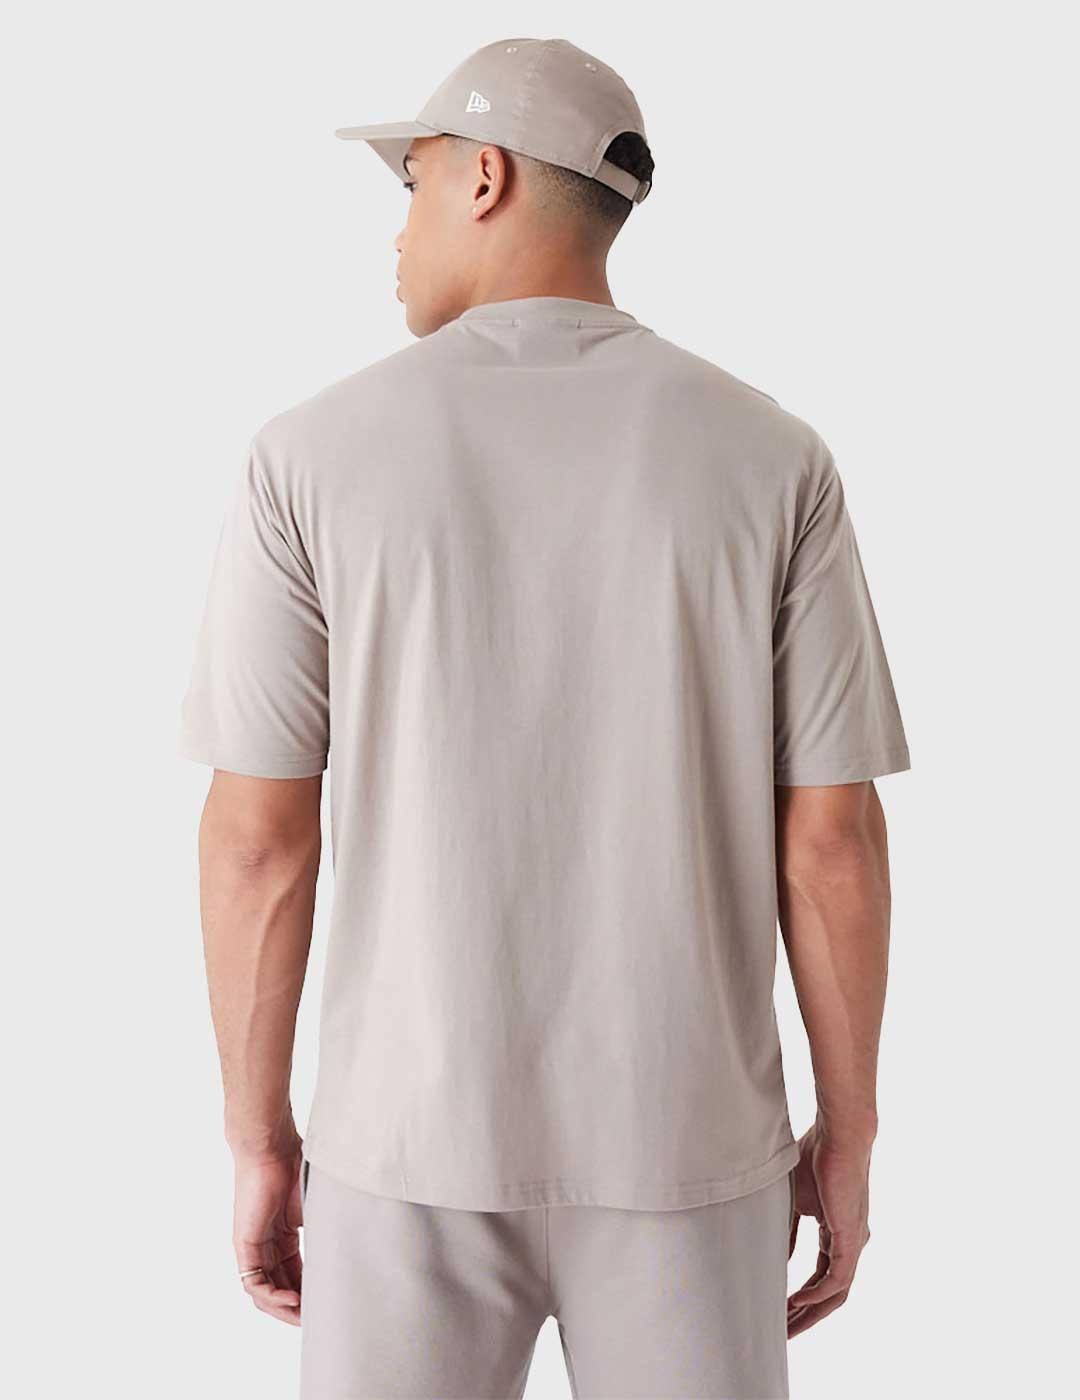 New EraLeague Essentials LC Camiseta marrón unisex